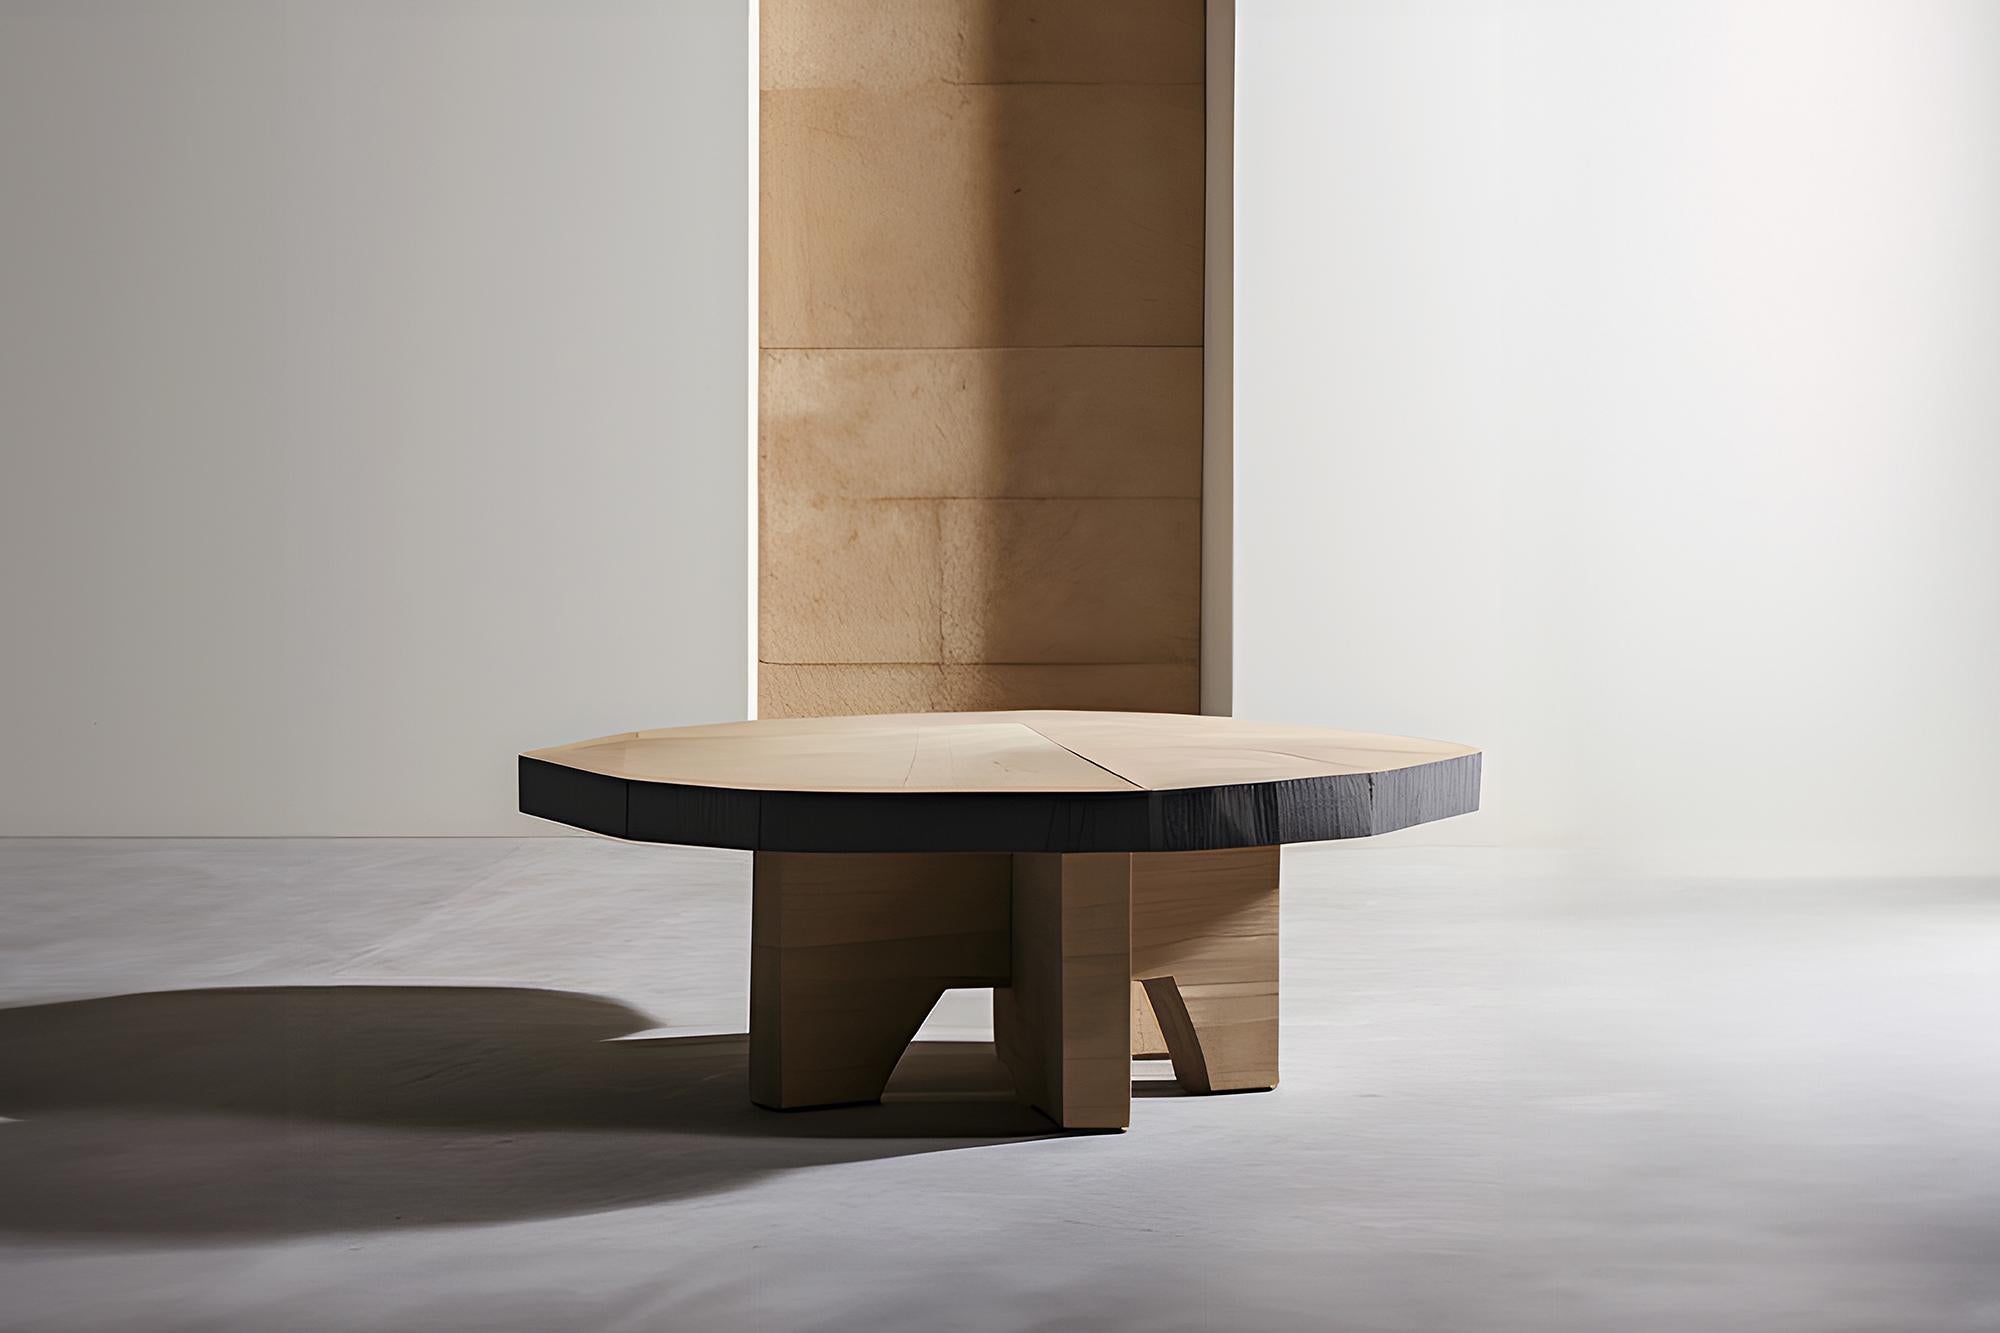 Table basse Fundamenta 48 abstrait en chêne, design élégant par NONO

Table basse sculpturale en bois massif avec une finition naturelle à base d'eau ou teintée en noir. En raison de la nature du processus de production, chaque pièce peut varier en